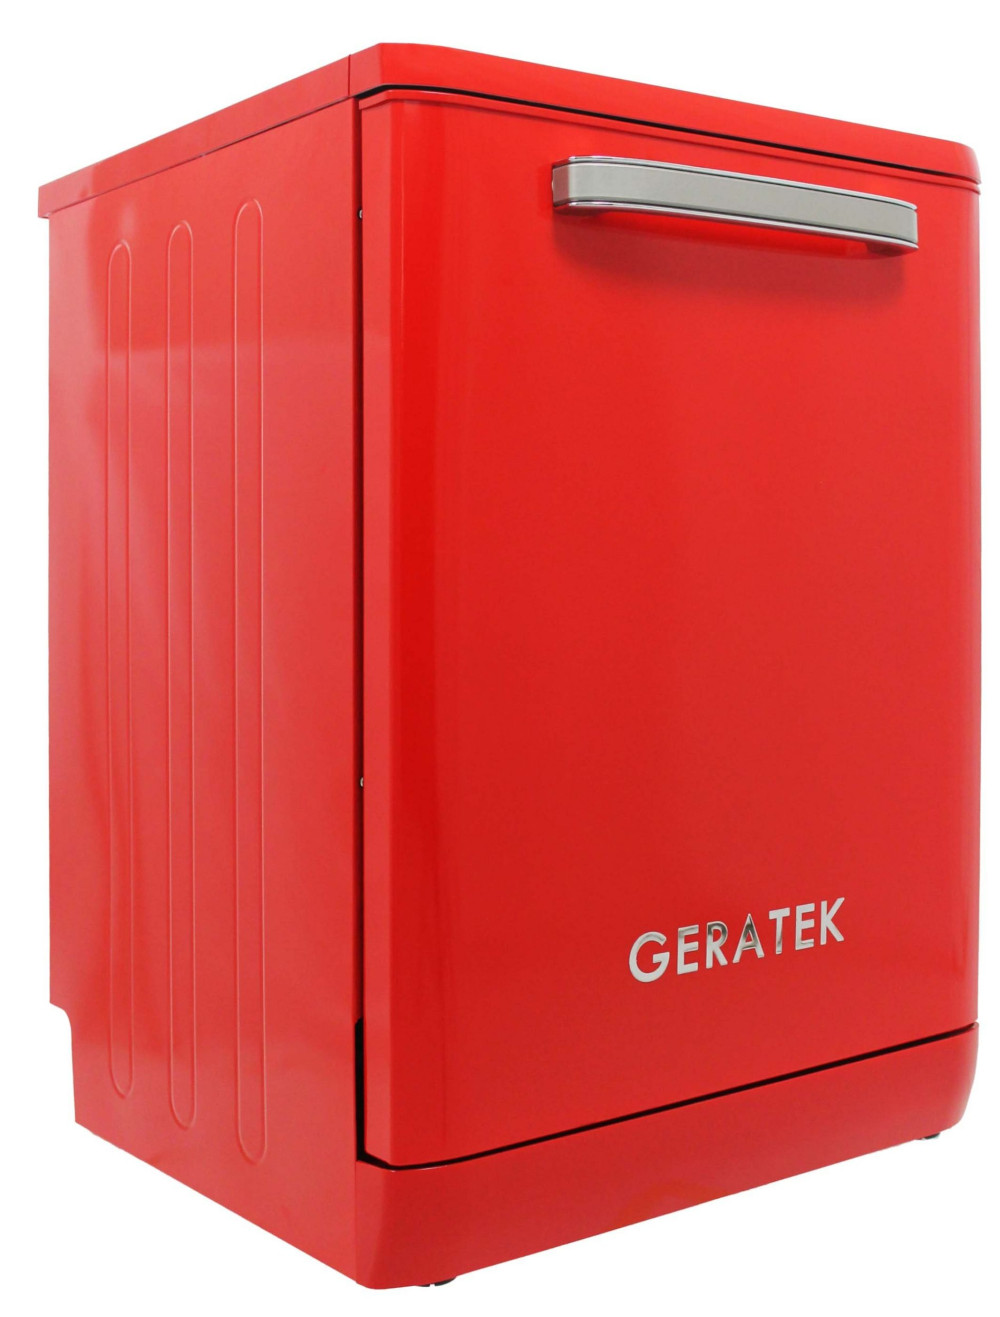 Geratek GS6200R szépséghibás piros 12 terítékes retro mosogatógép